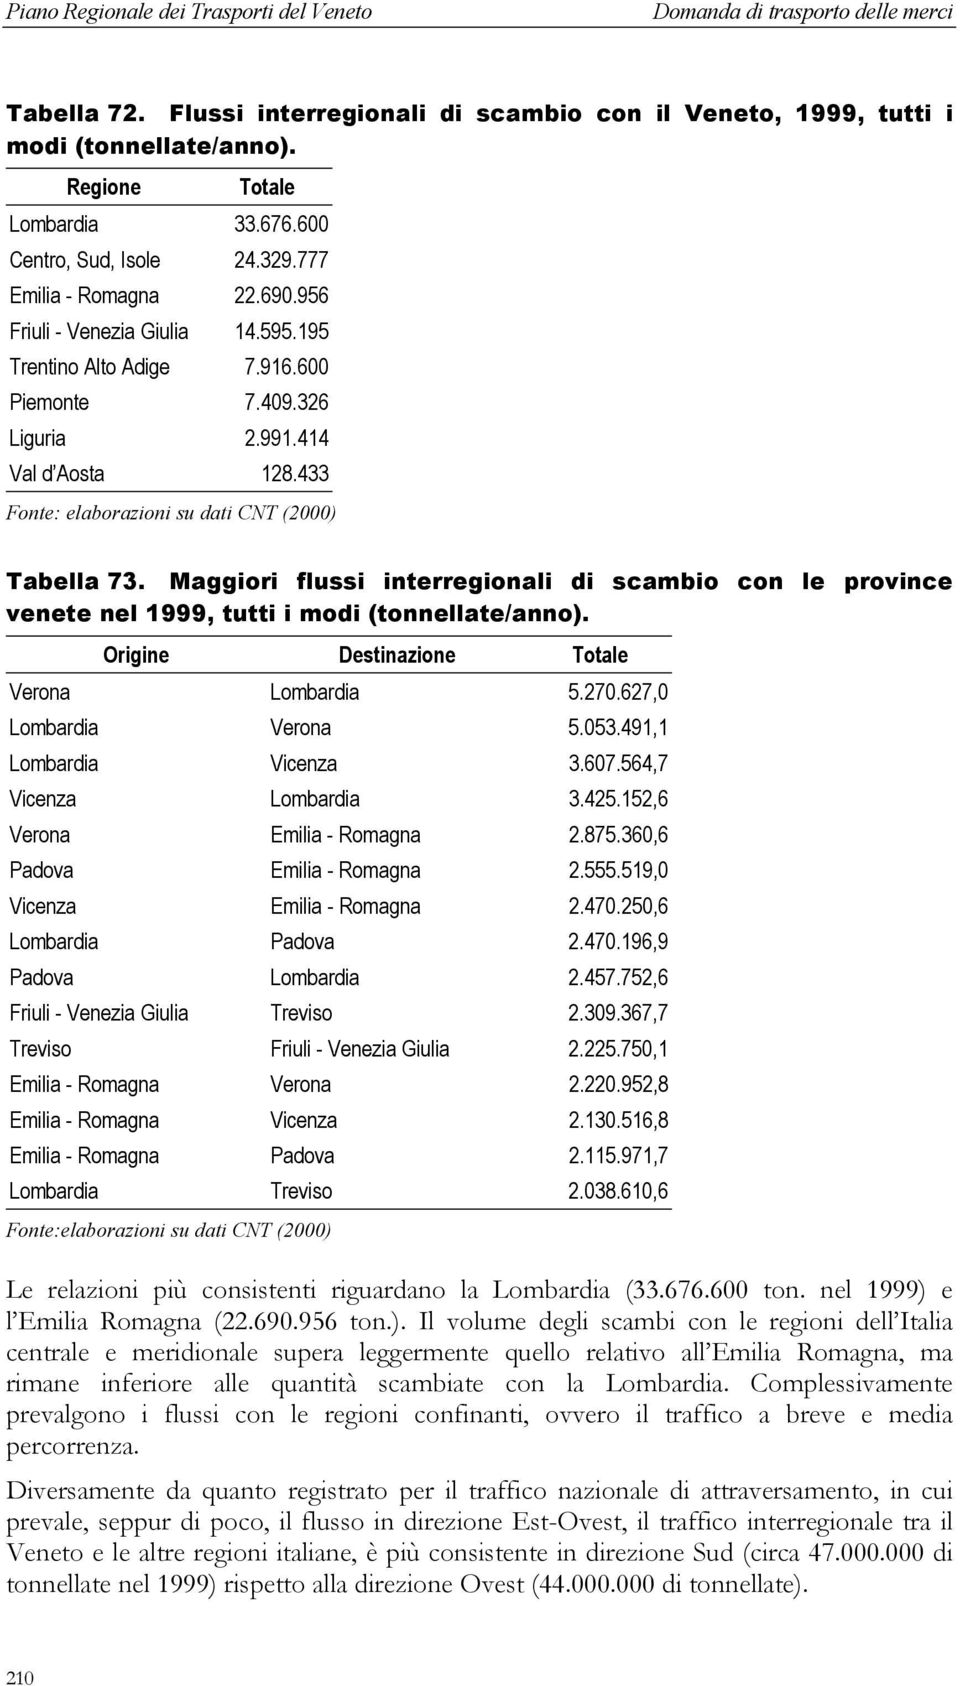 Maggiori flussi interregionali di scambio con le province venete nel 1999, tutti i modi (tonnellate/anno). Origine Destinazione Totale Verona Lombardia 5.270.627,0 Lombardia Verona 5.053.